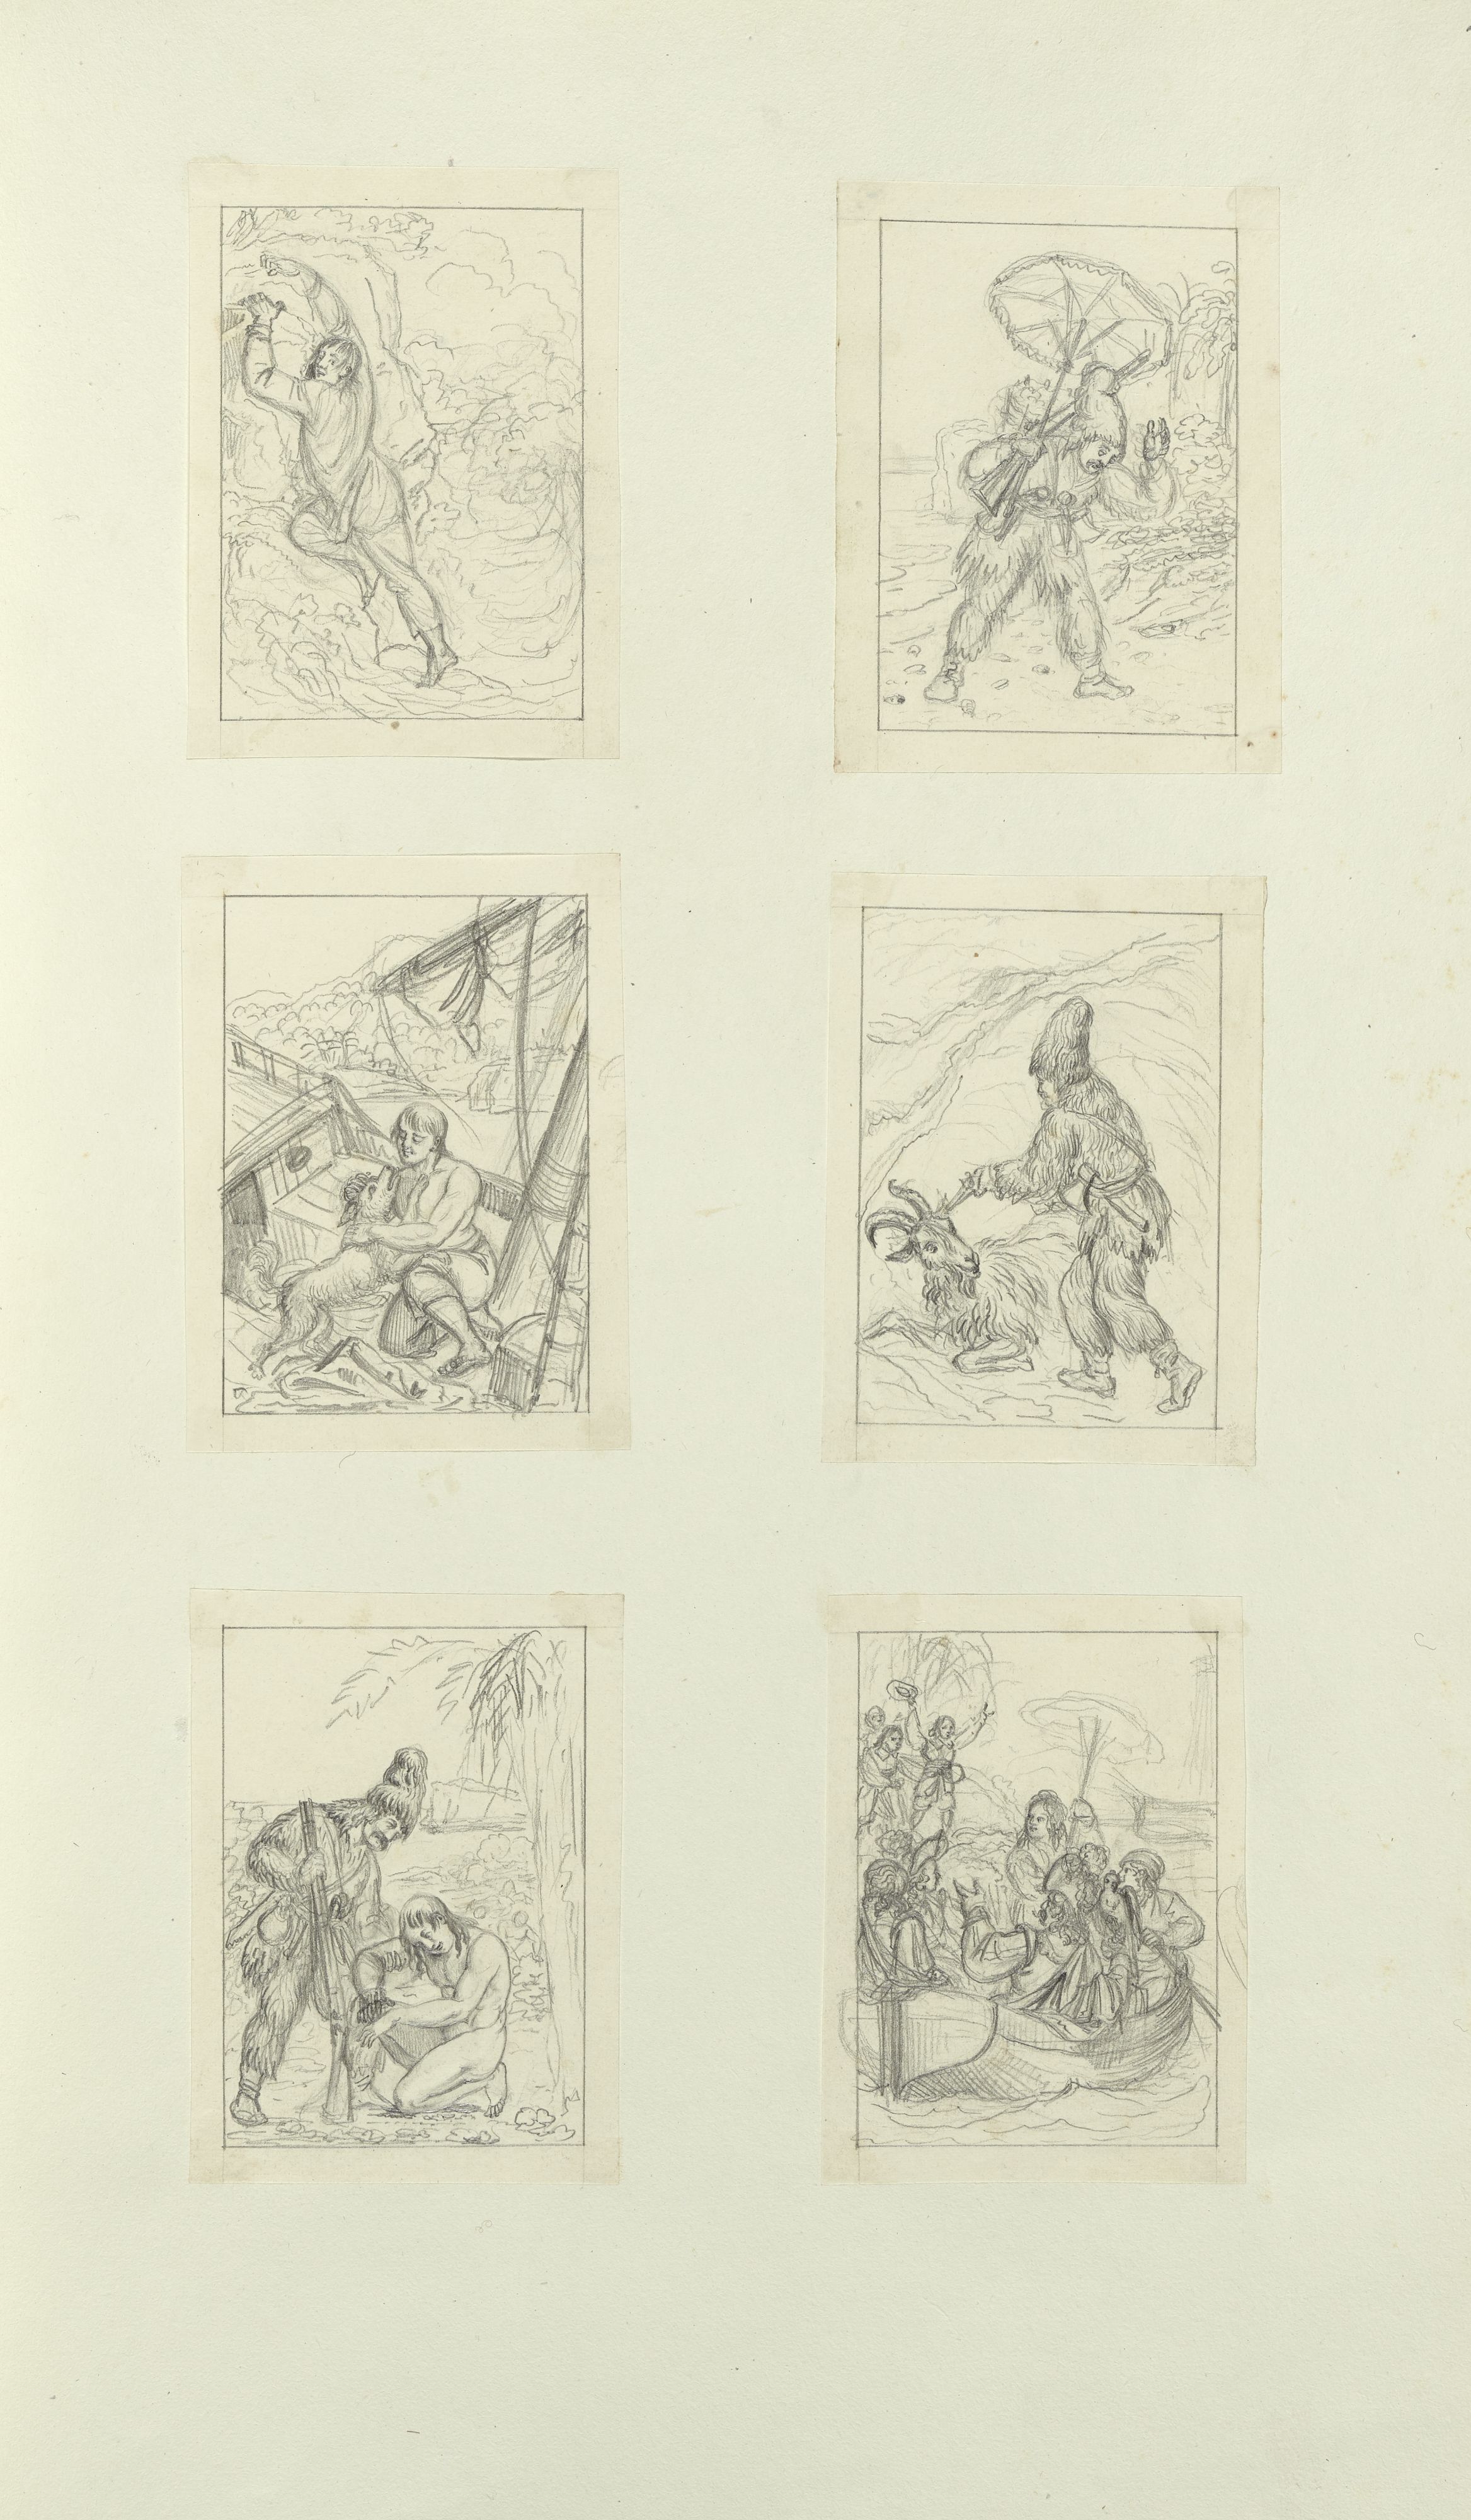 Vorzeichnungen zu Robinson Crusoe, undatiert, Kunsthaus Zürich, Graphische Sammlung, in: Franz Hegi, VII., Studien zu Kupferplatten, S. 21